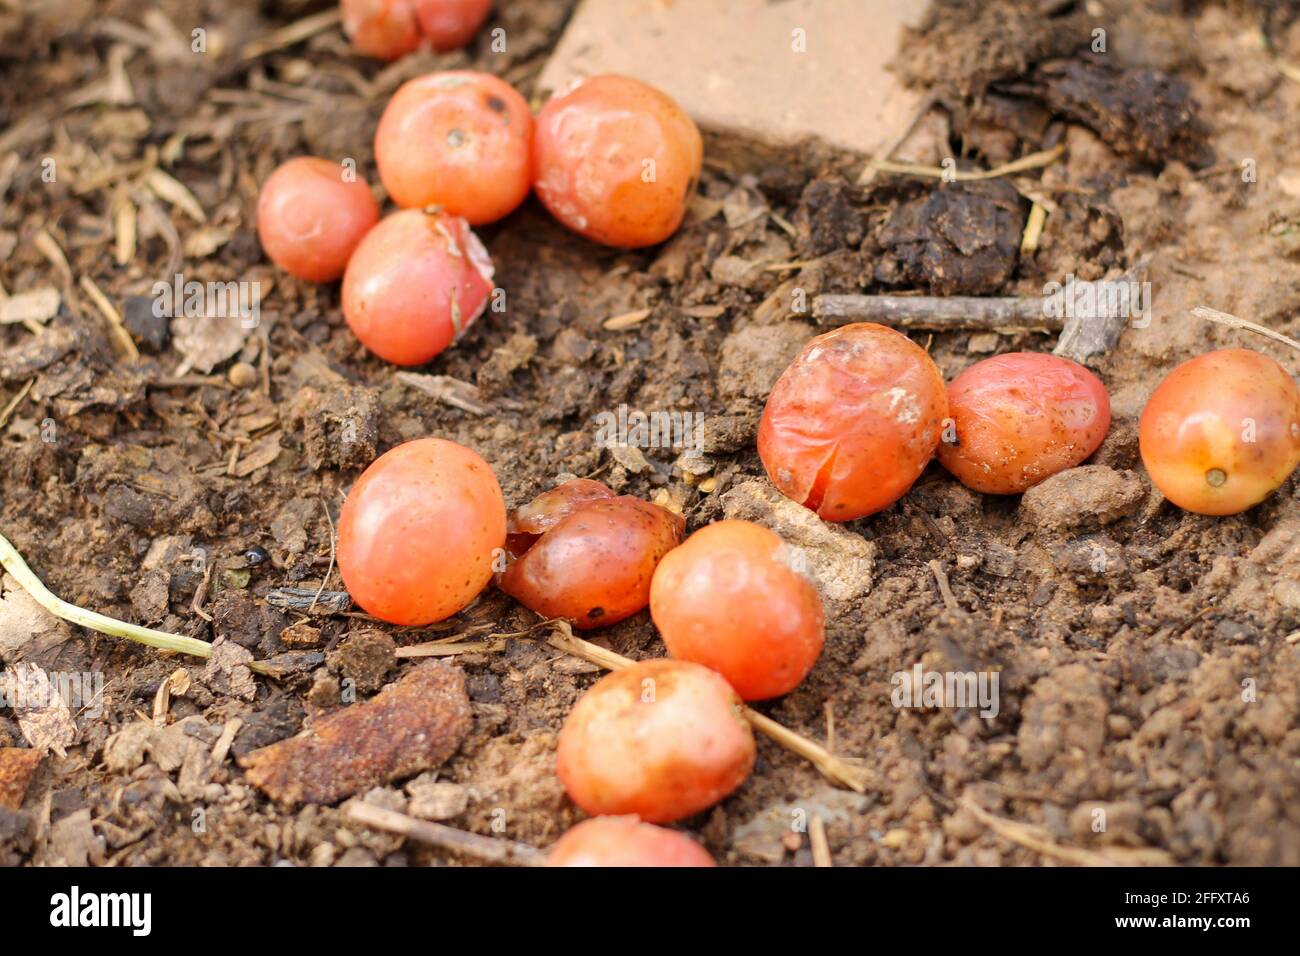 Los tomates podridos son dejados caer en la tierra en el jardín para permitir que las semillas germinen. Foto de stock